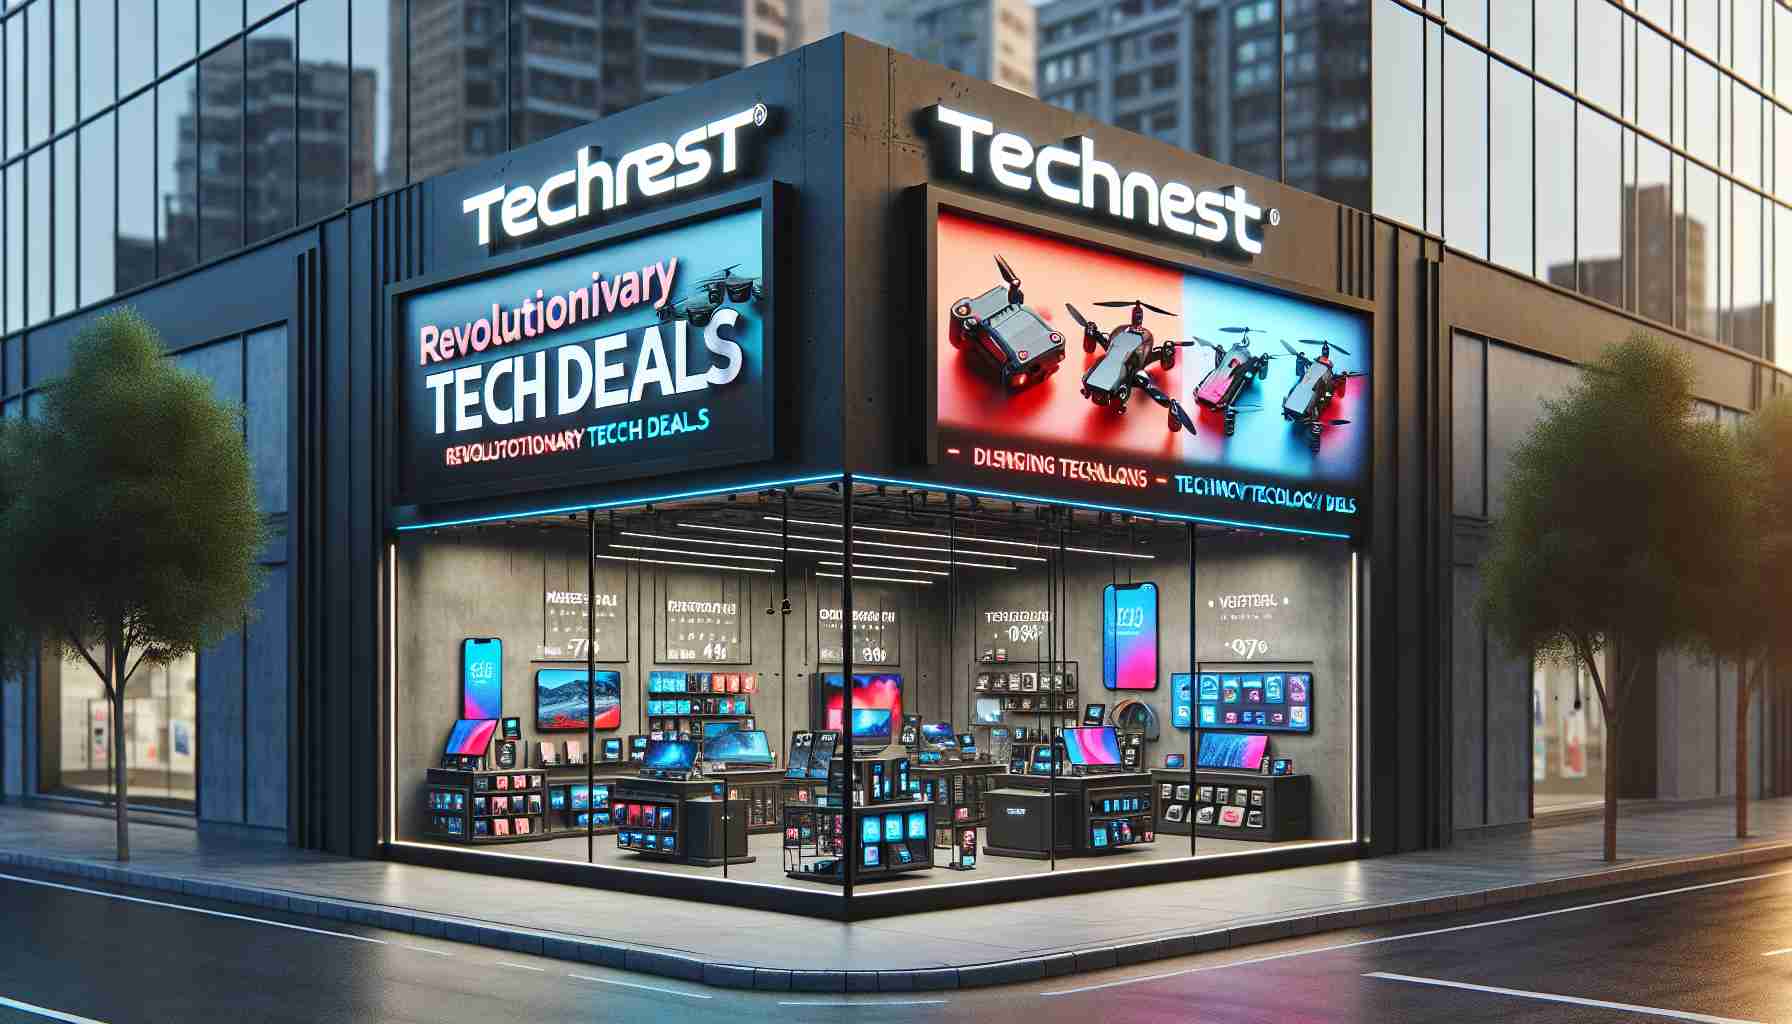 TechNest Innovative Technology Deals